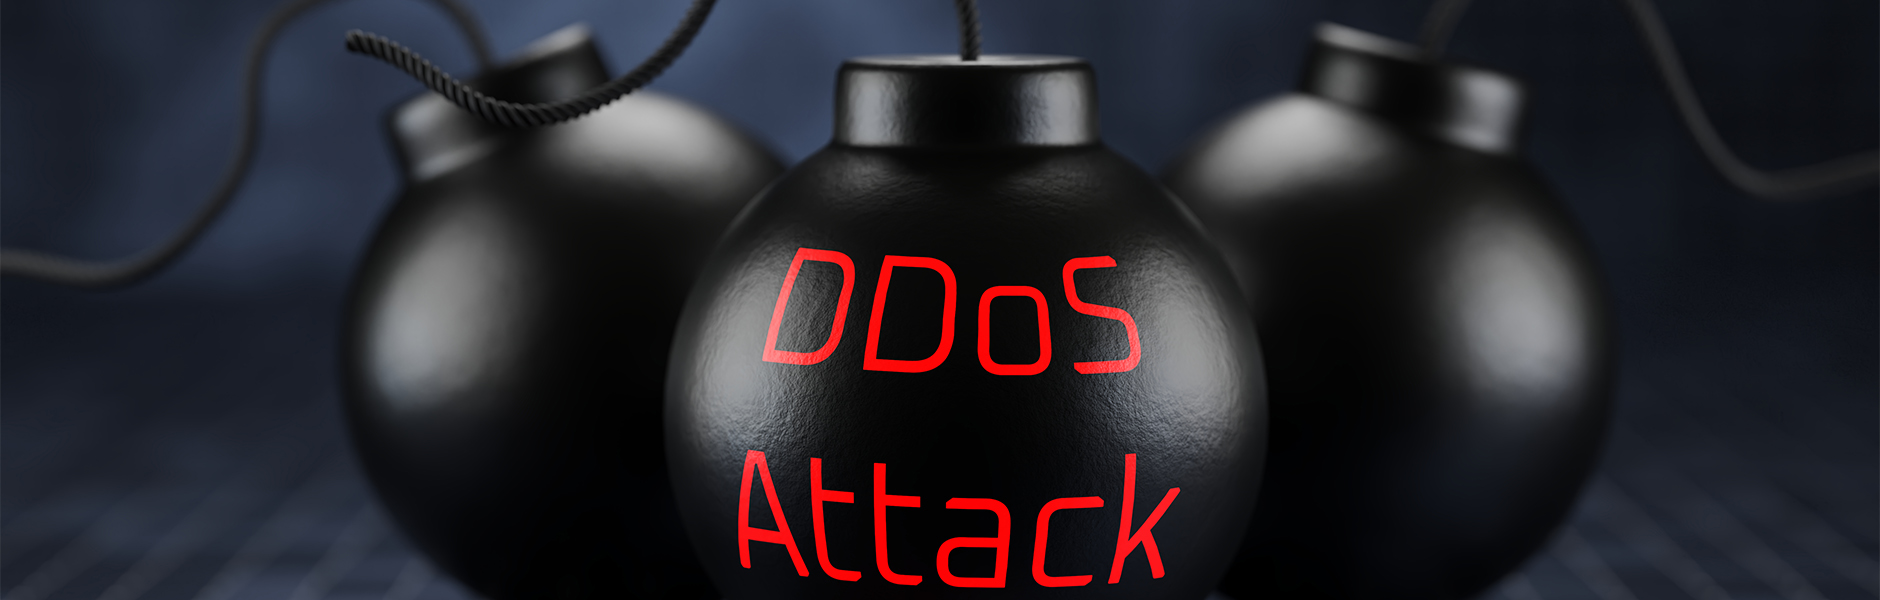 DDoS Nedi̇r?